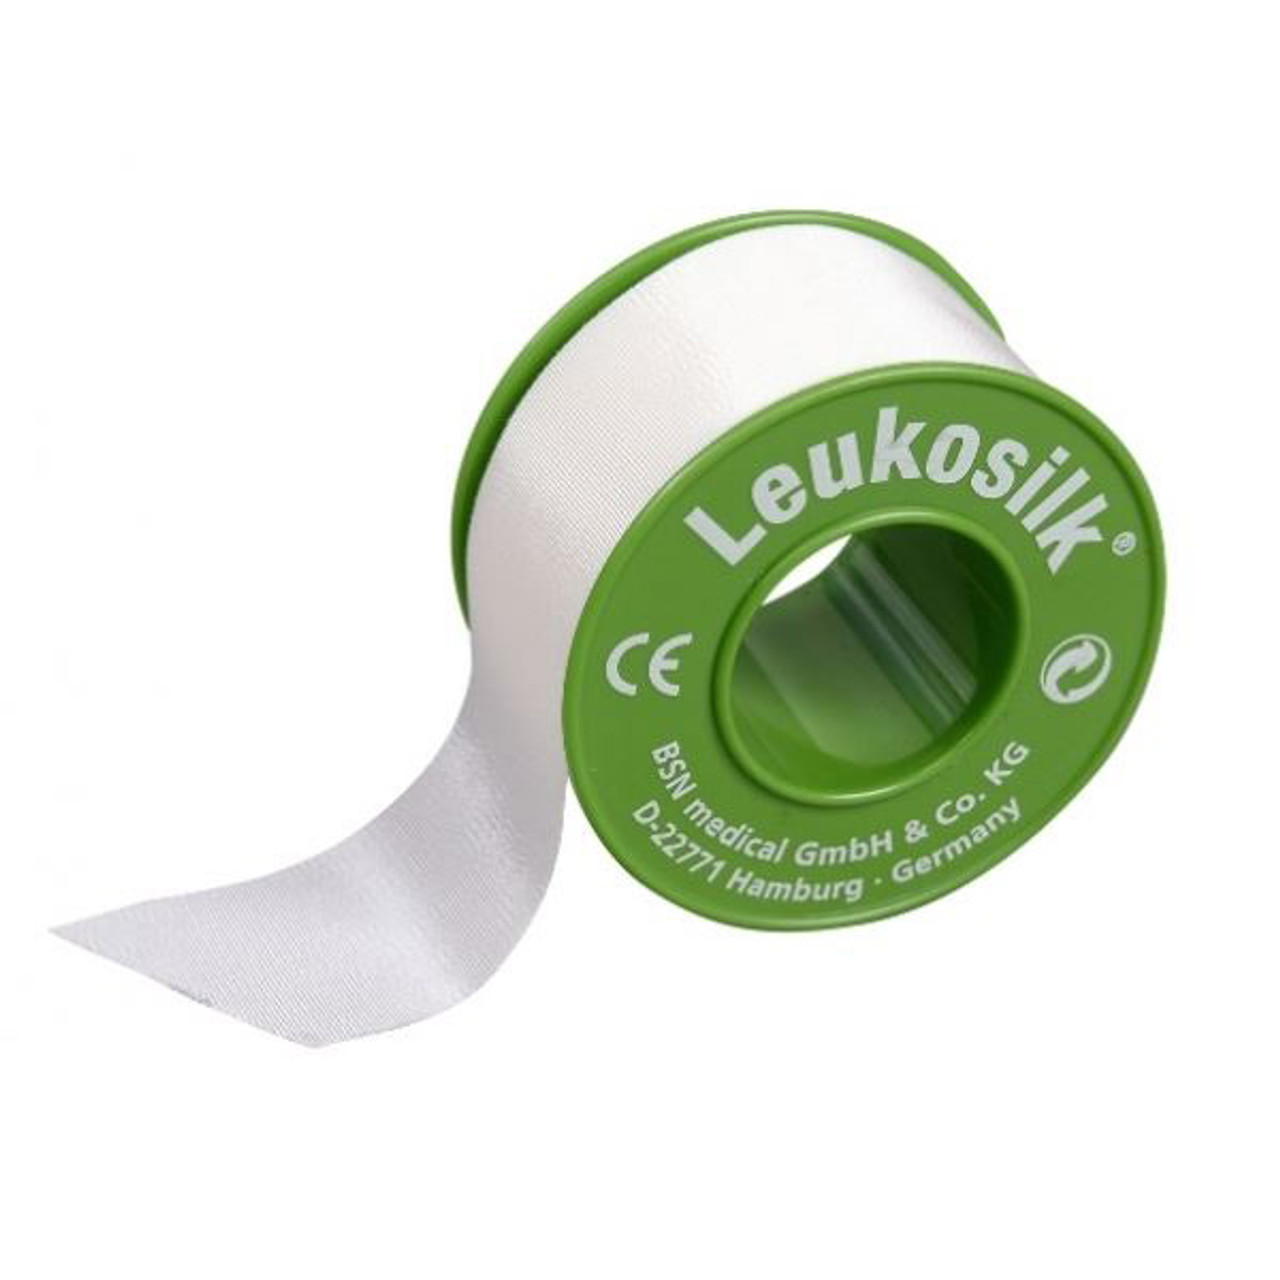 Leukosilk Tape 2.5cm x 5m